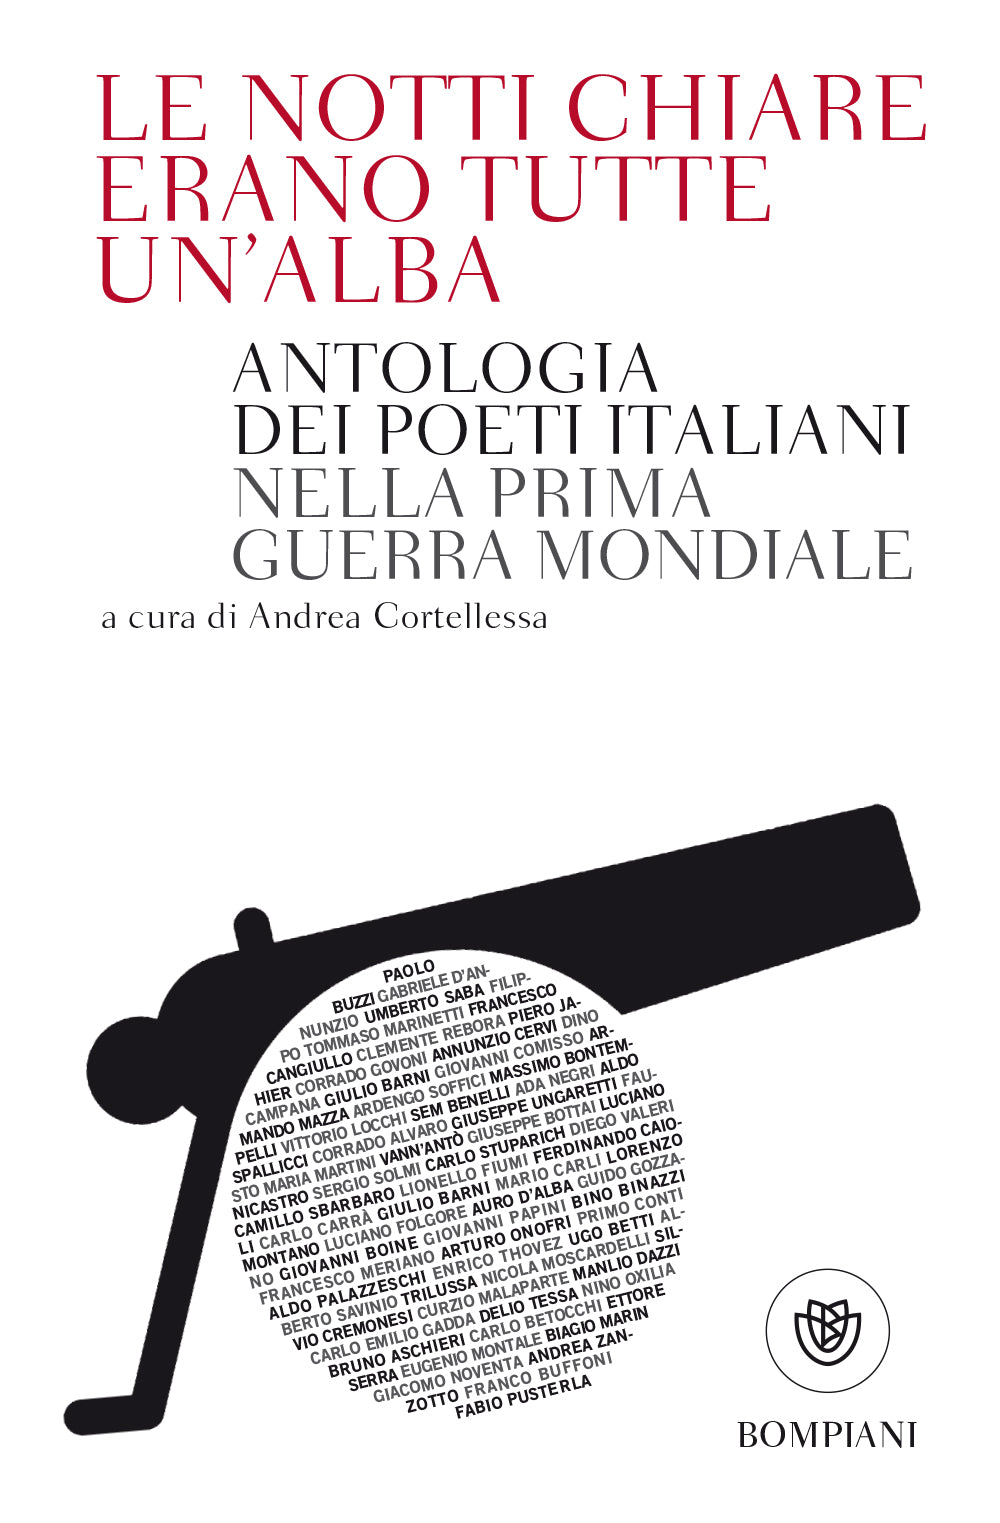 Le notti chiare erano tutte un'alba::Antologia dei poeti italiani nella Prima Guerra Mondiale - Nuova edizione accresciuta